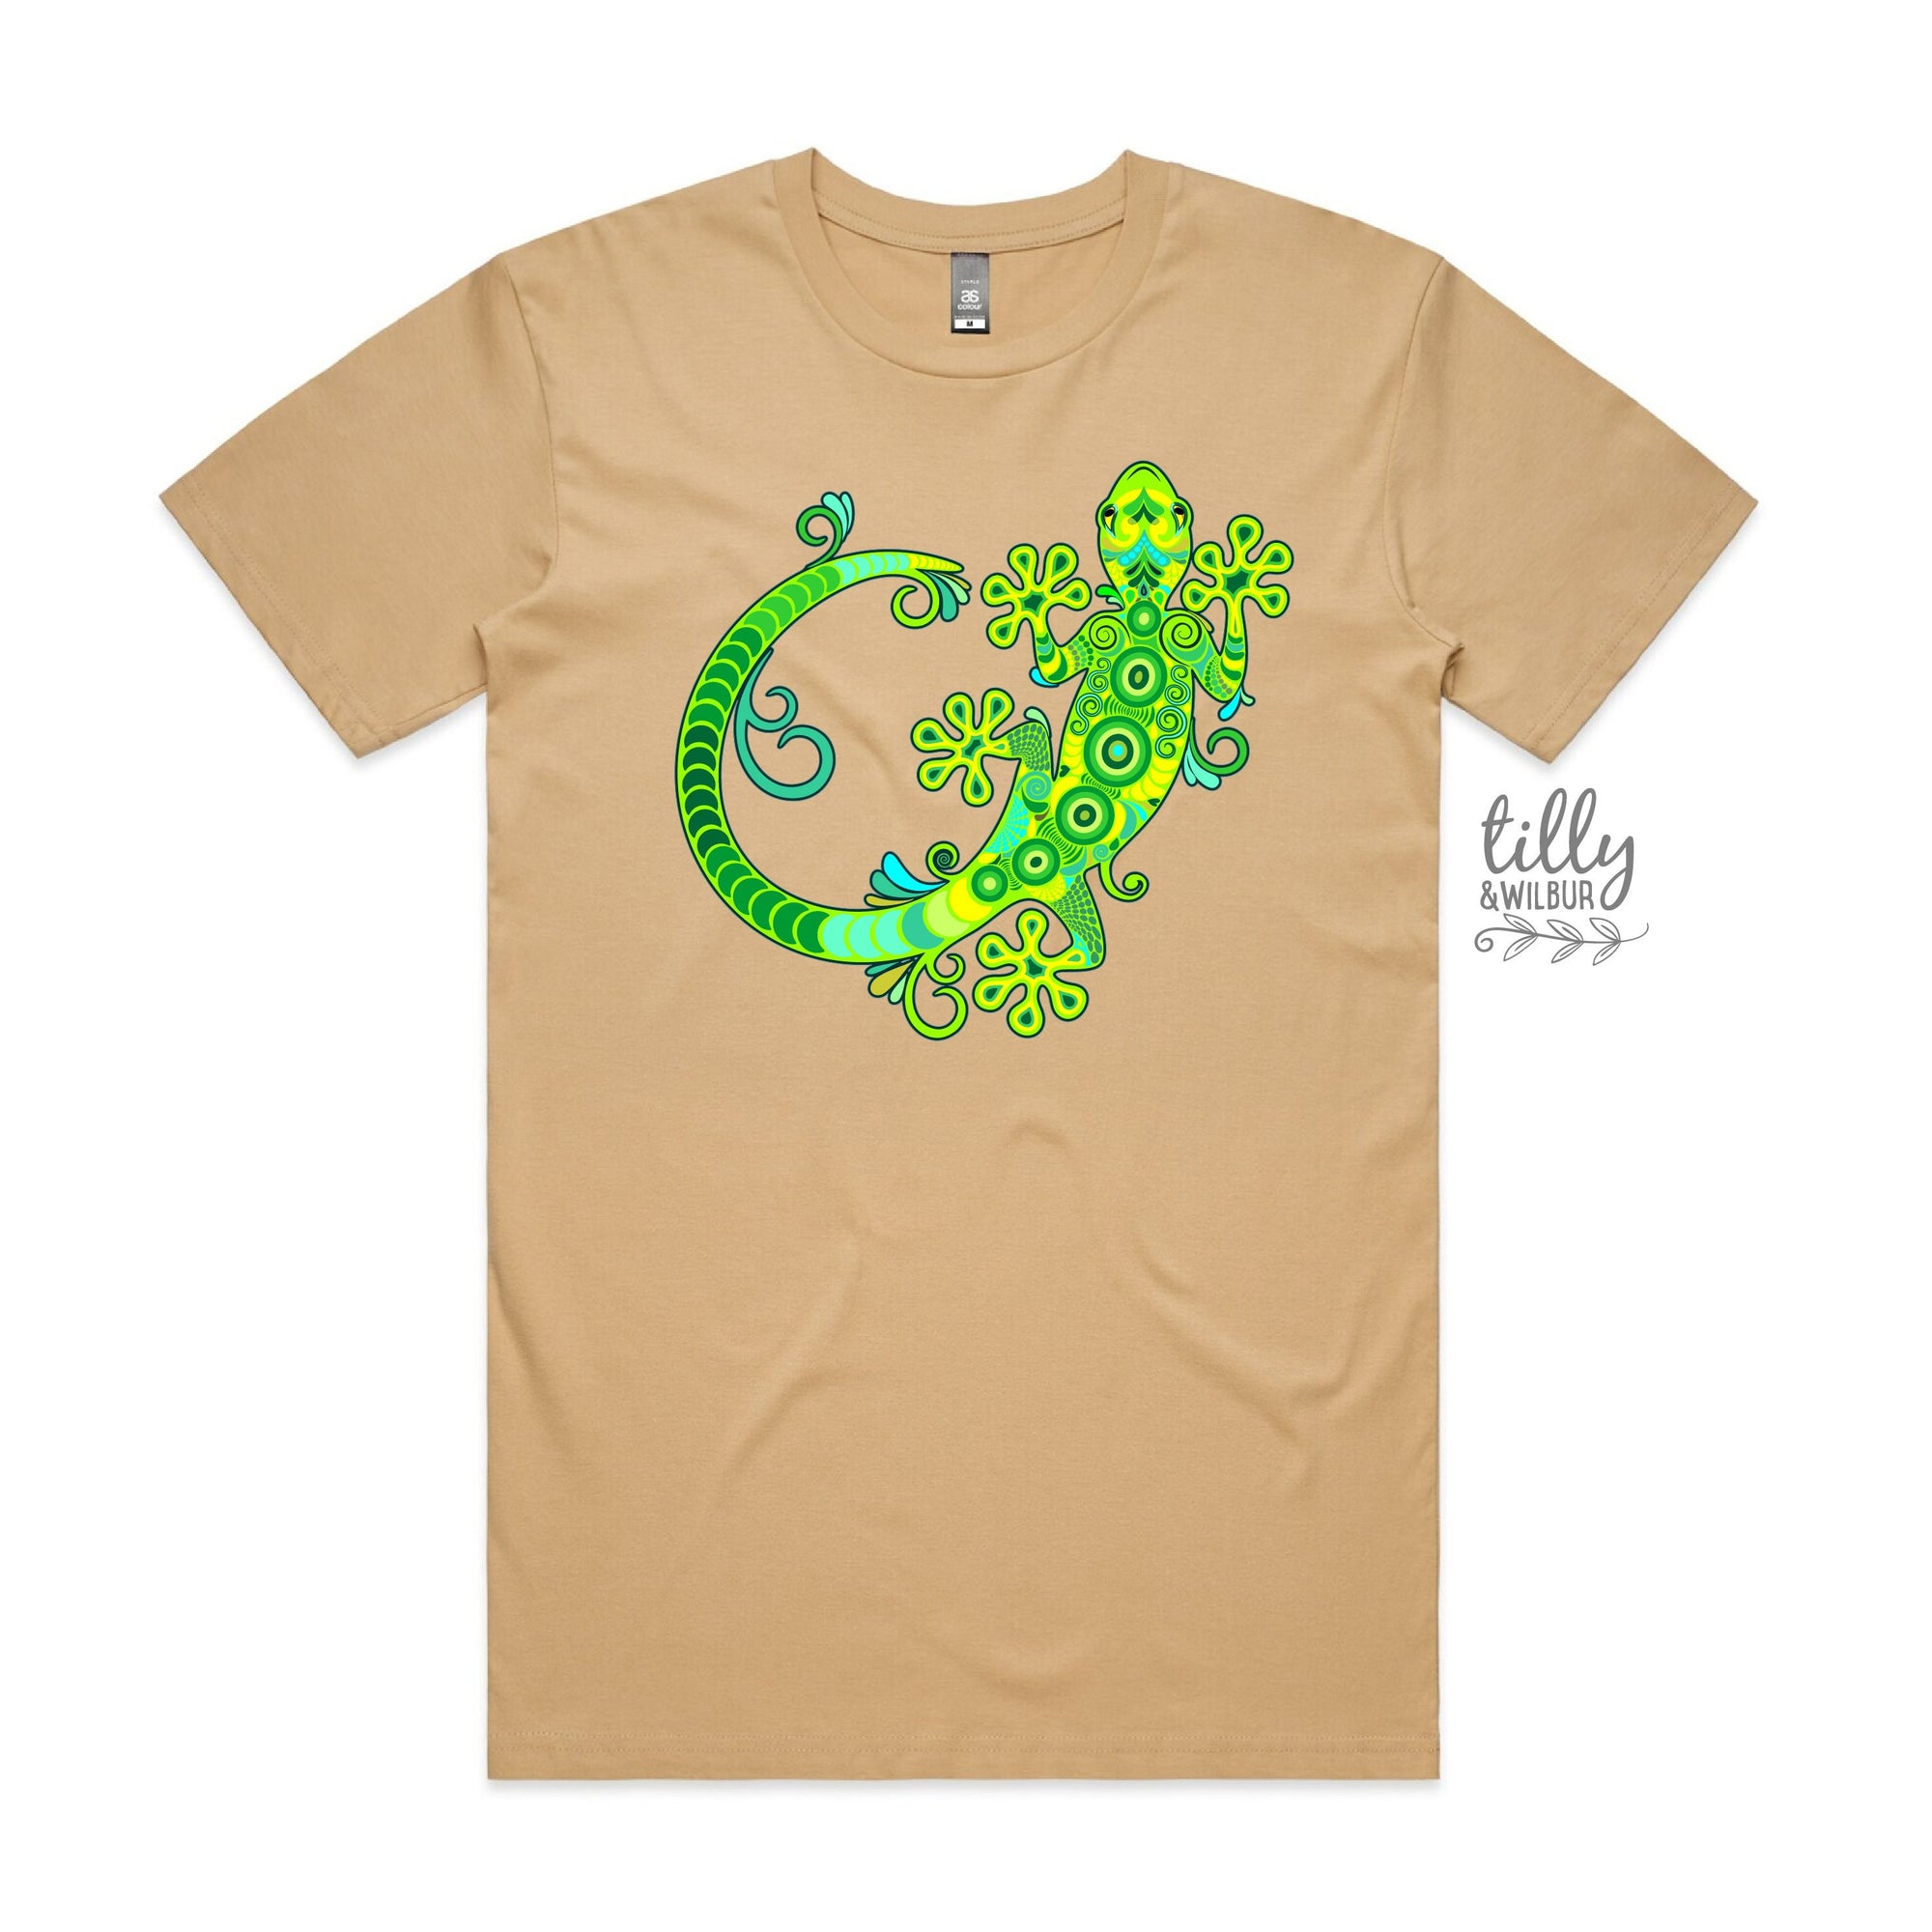 Gecko T-Shirt, Gecko Lover T-Shirt, Lizard T-Shirt, Lizard Lover T-Shirt, Men's Gecko T-Shirt, Gecko Lover Gift, Gecko Gift, Cute Gecko